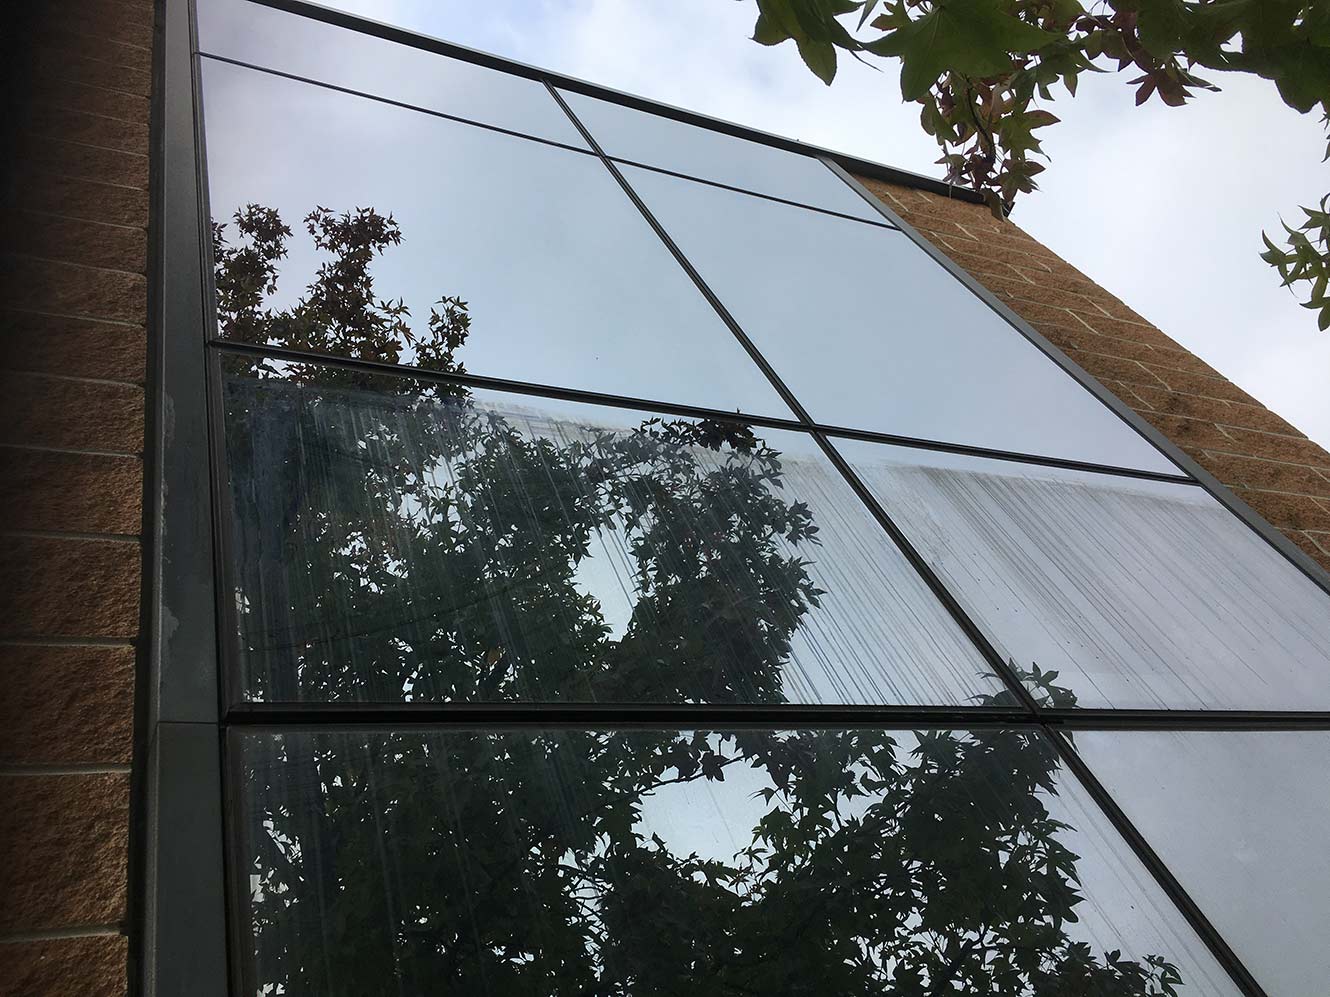 Pulizia vetrate e vetri